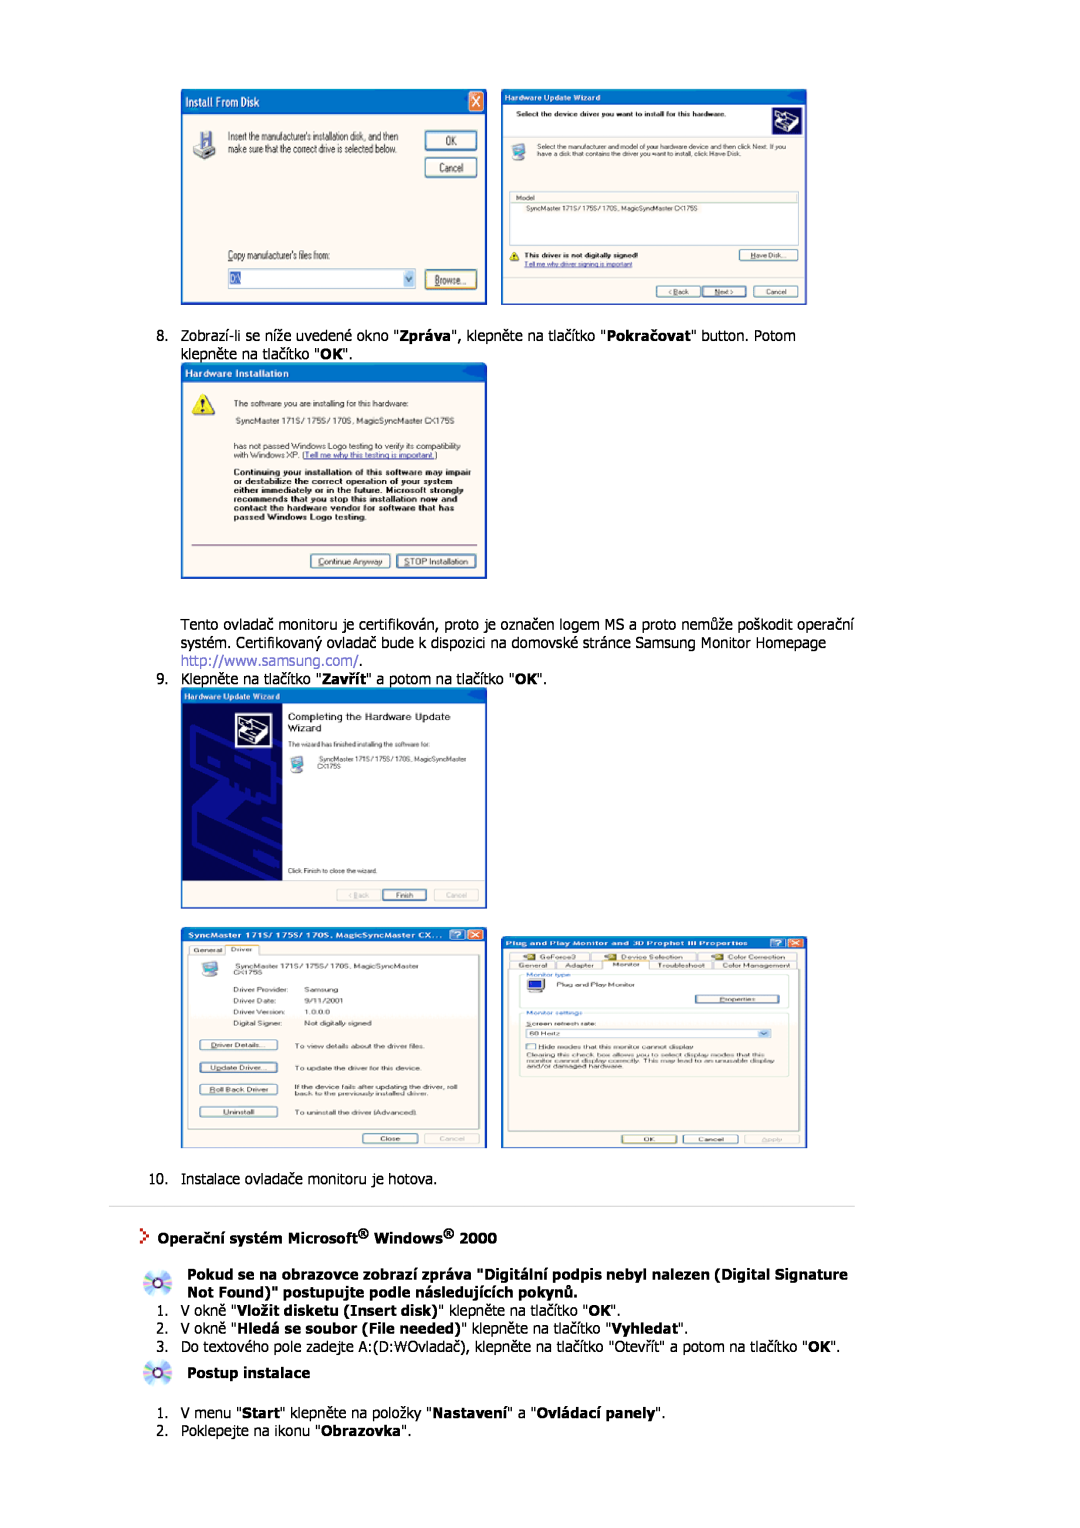 Samsung MJ15ASSN/EDC Operační systém Microsoft Windows, V okně Hledá se soubor File needed klepněte na tlačítko Vyhledat 